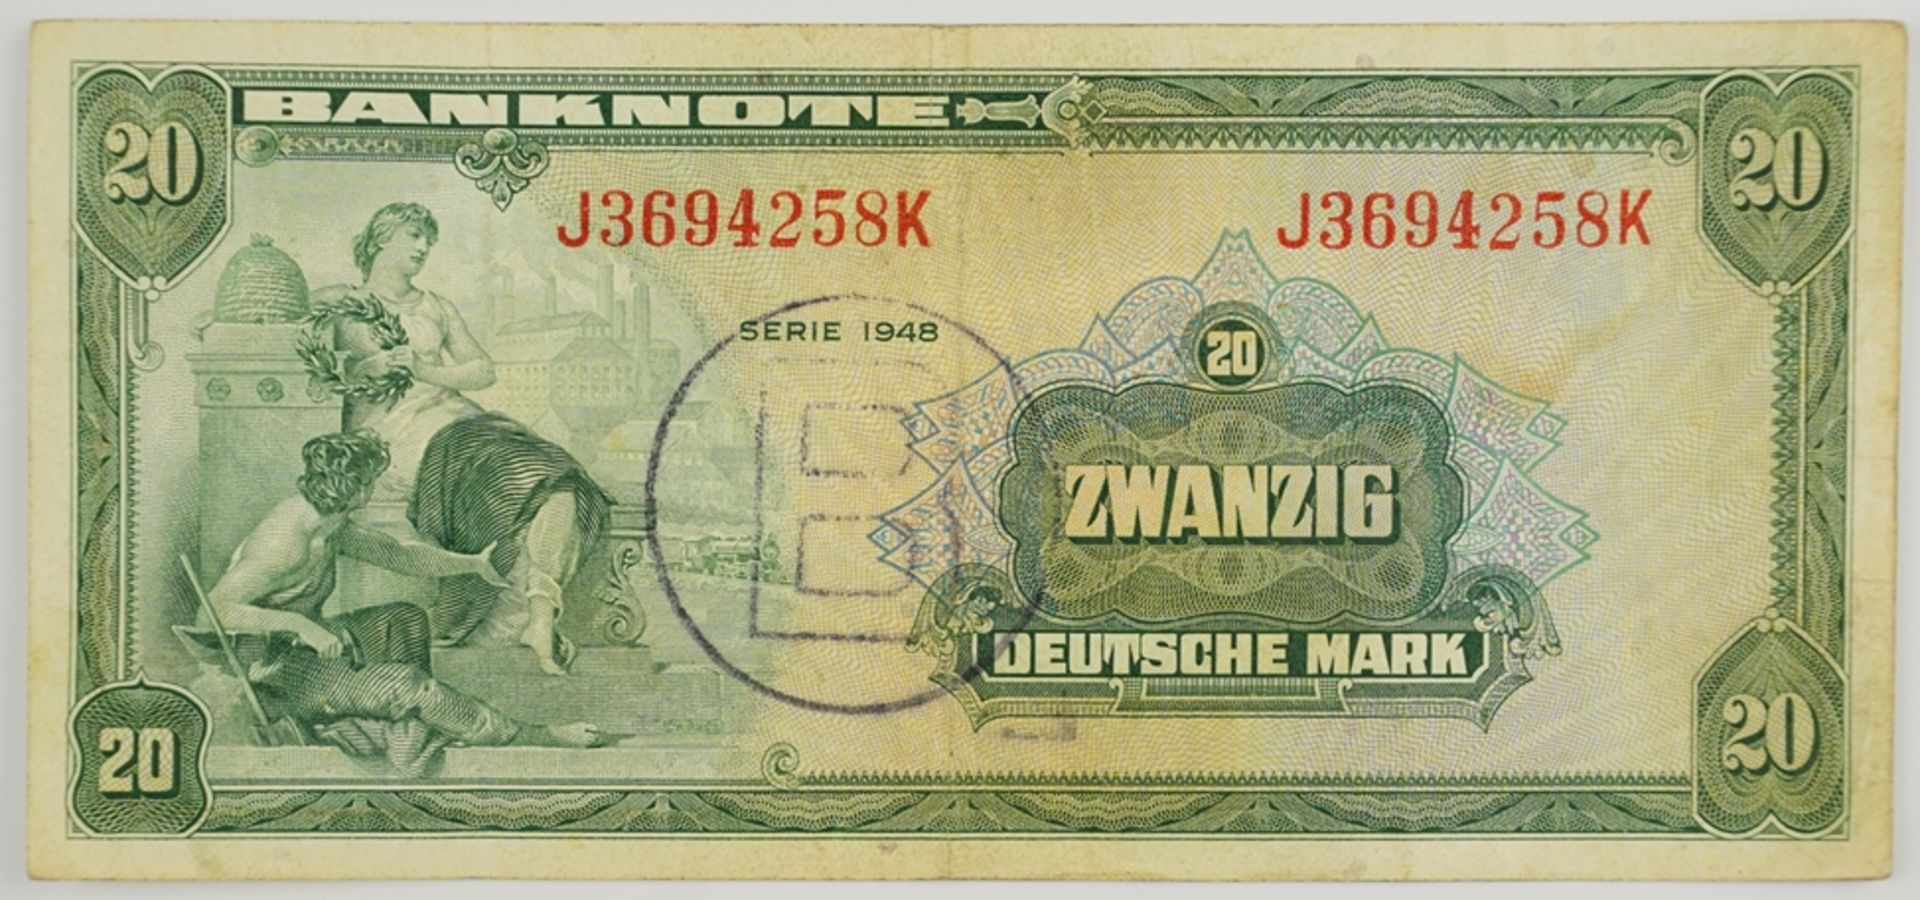 20 DM Schein 1948, Ausgabe für Berlin mit "B" Stempel